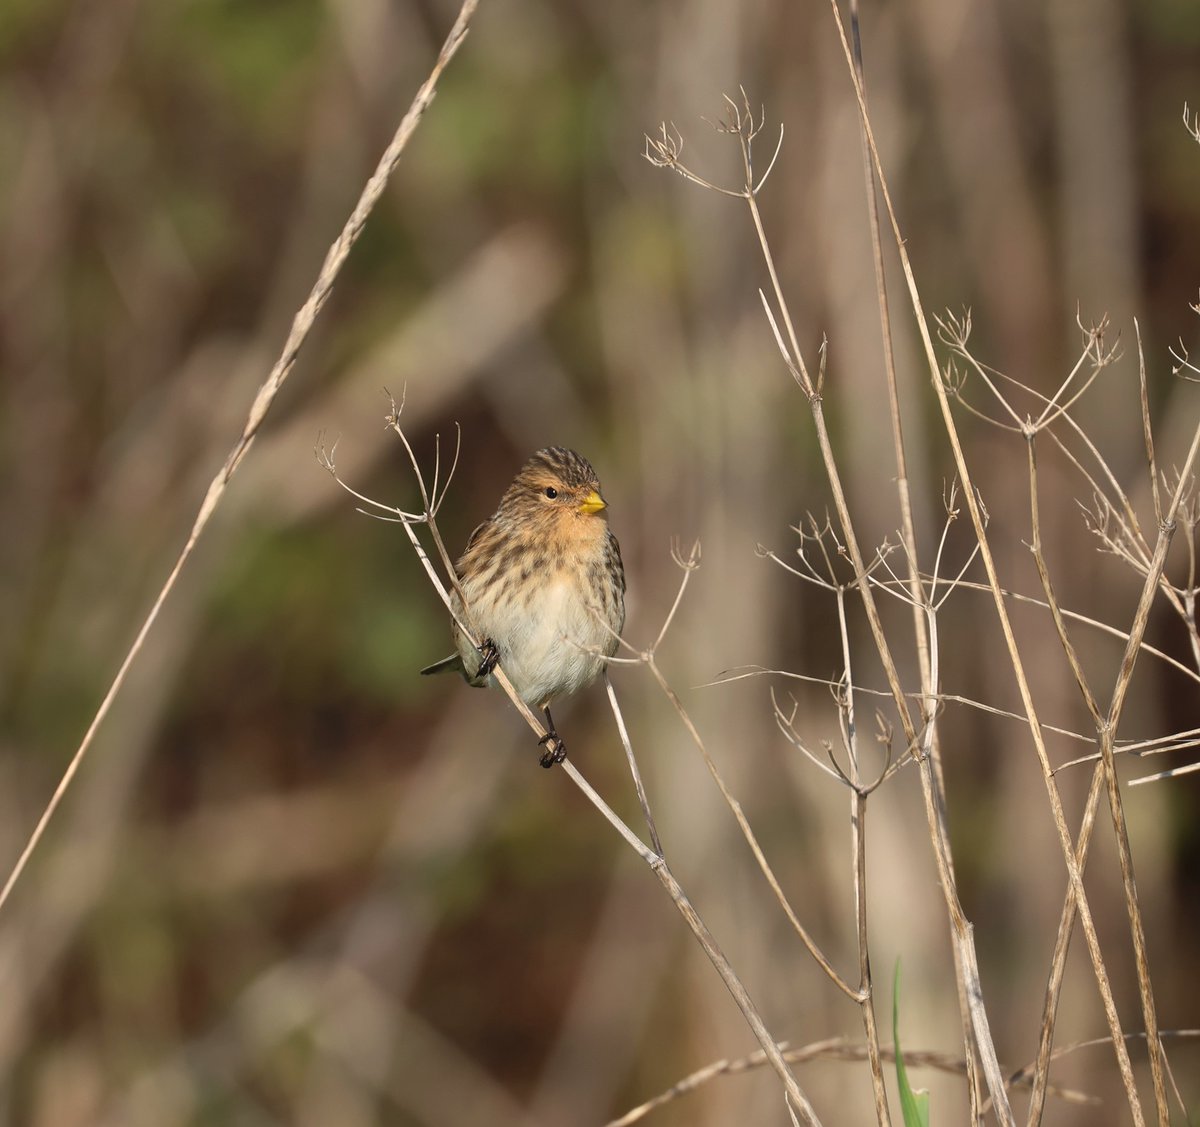 Latest Blog Post : Some early Birding Highlights ......... robs-birding.blogspot.com